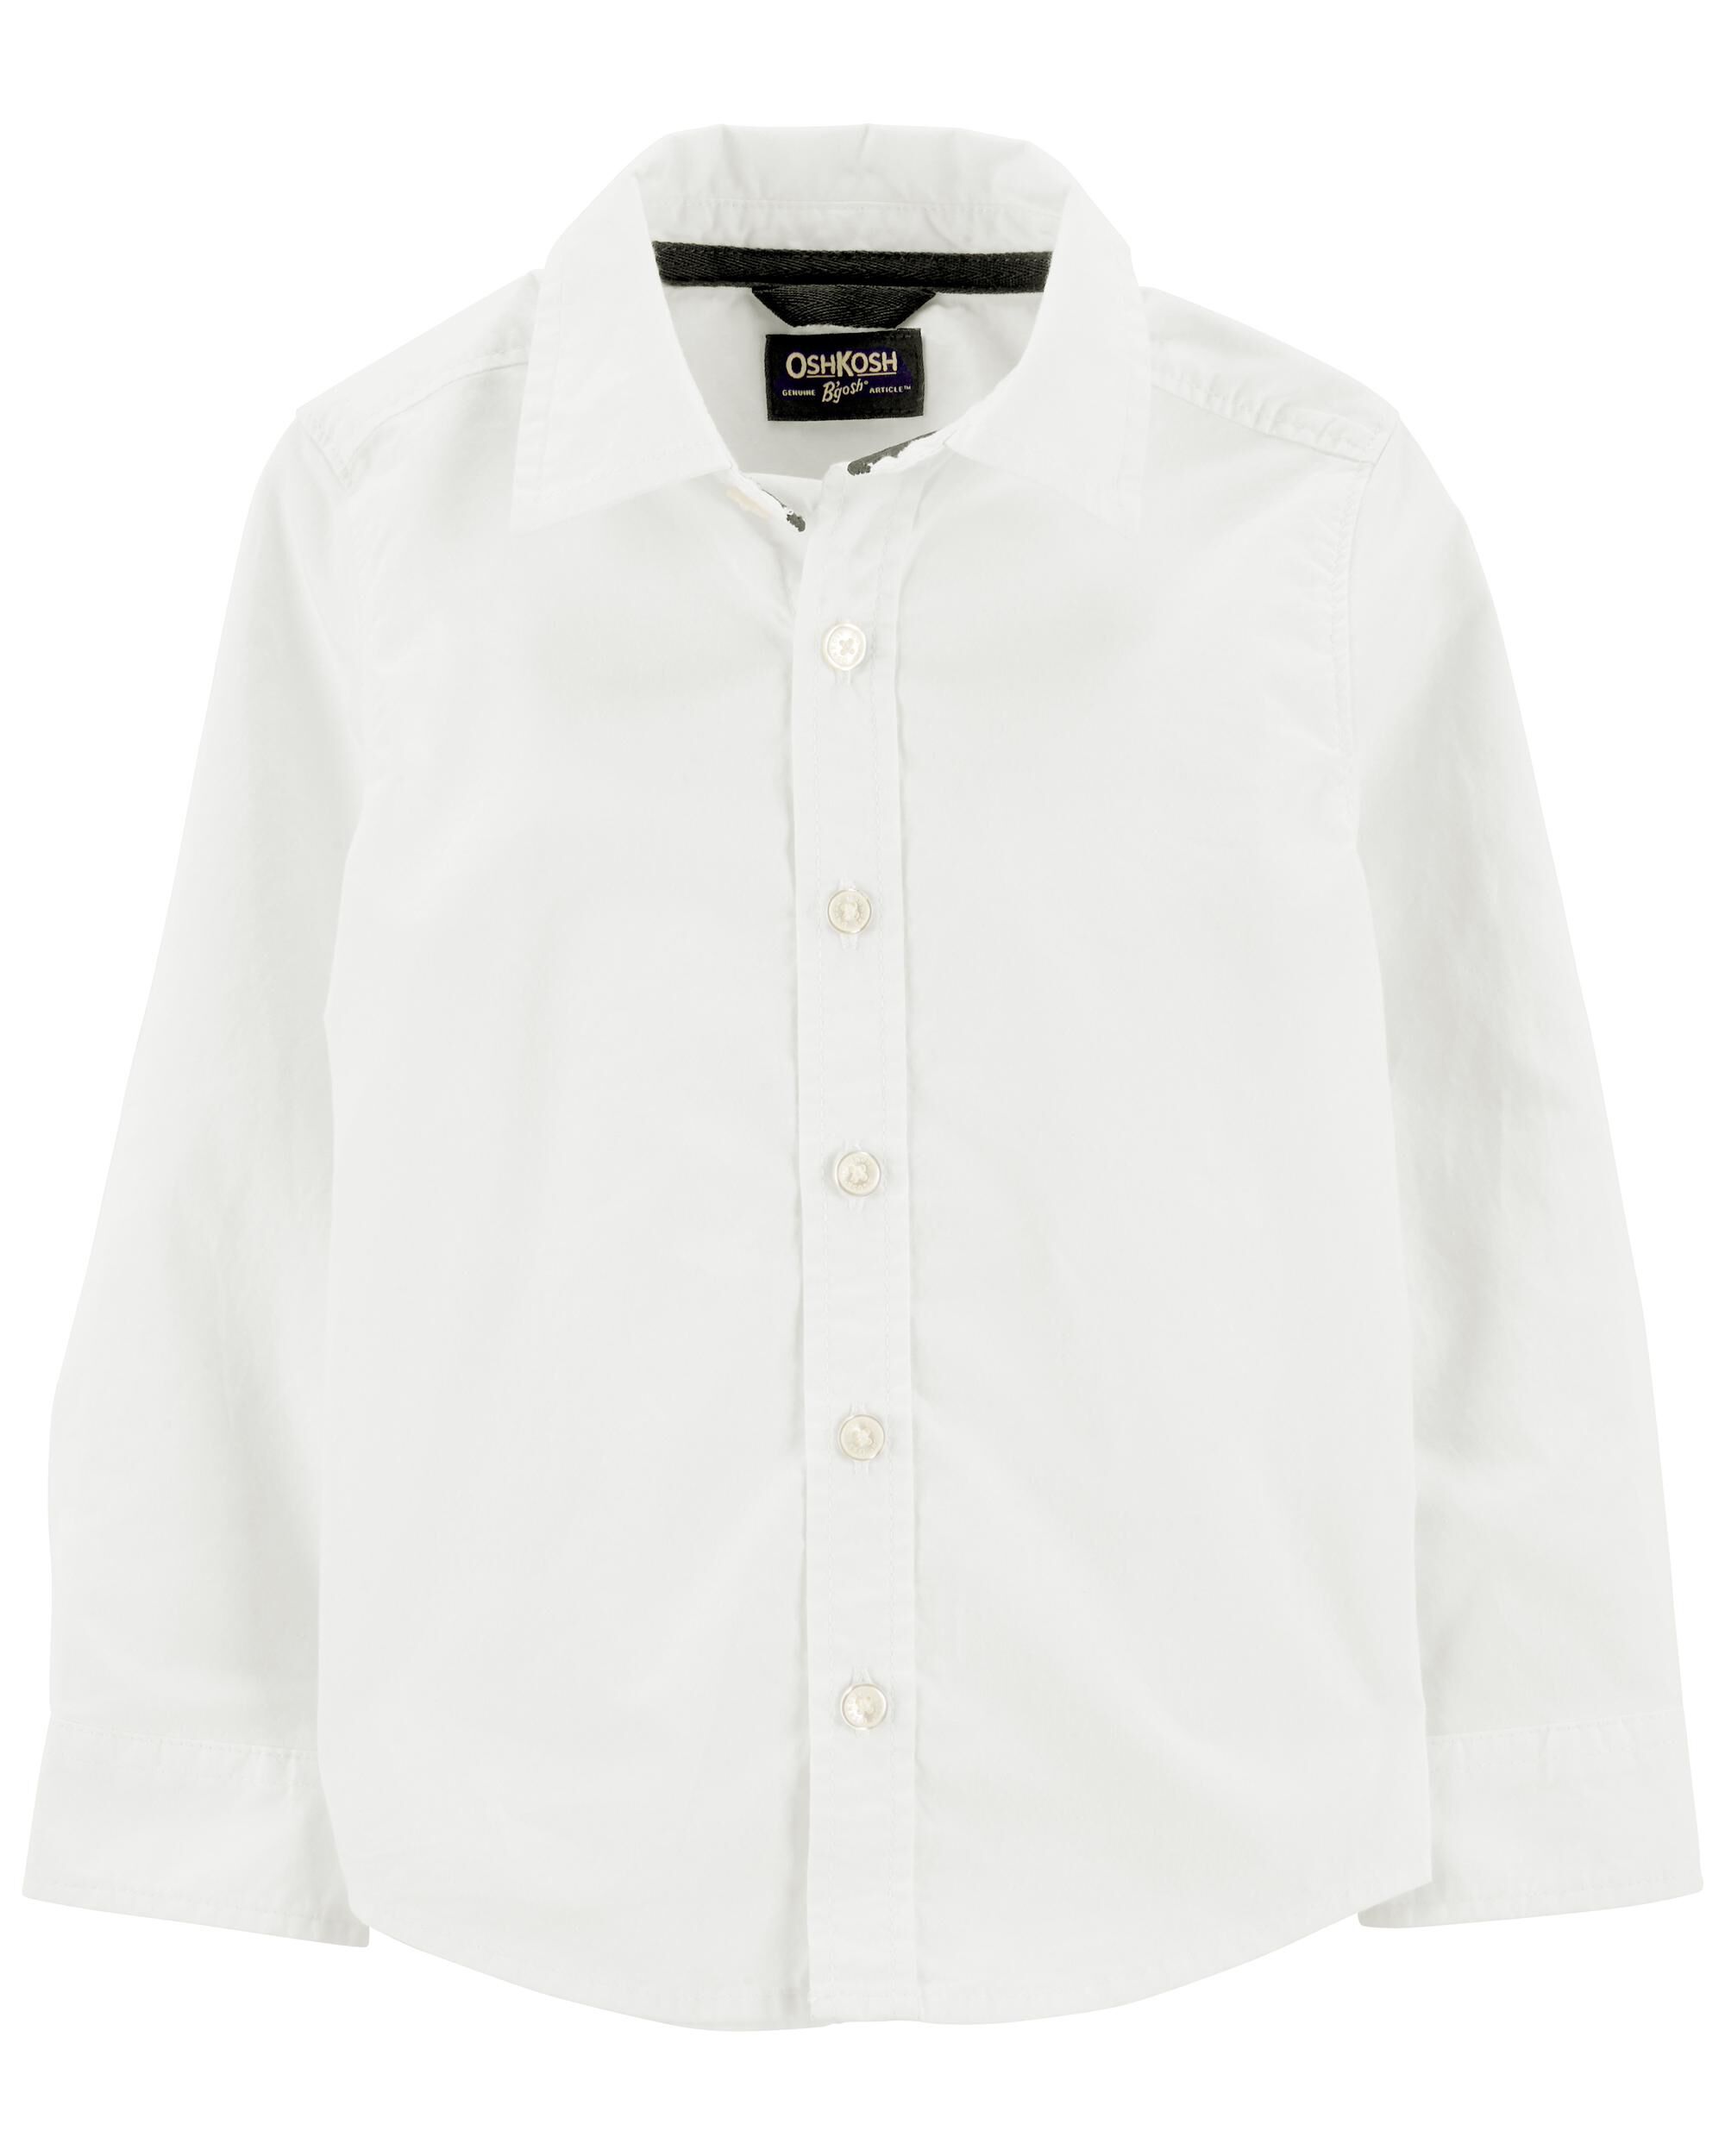 Carters Uniform Button-Front Shirt